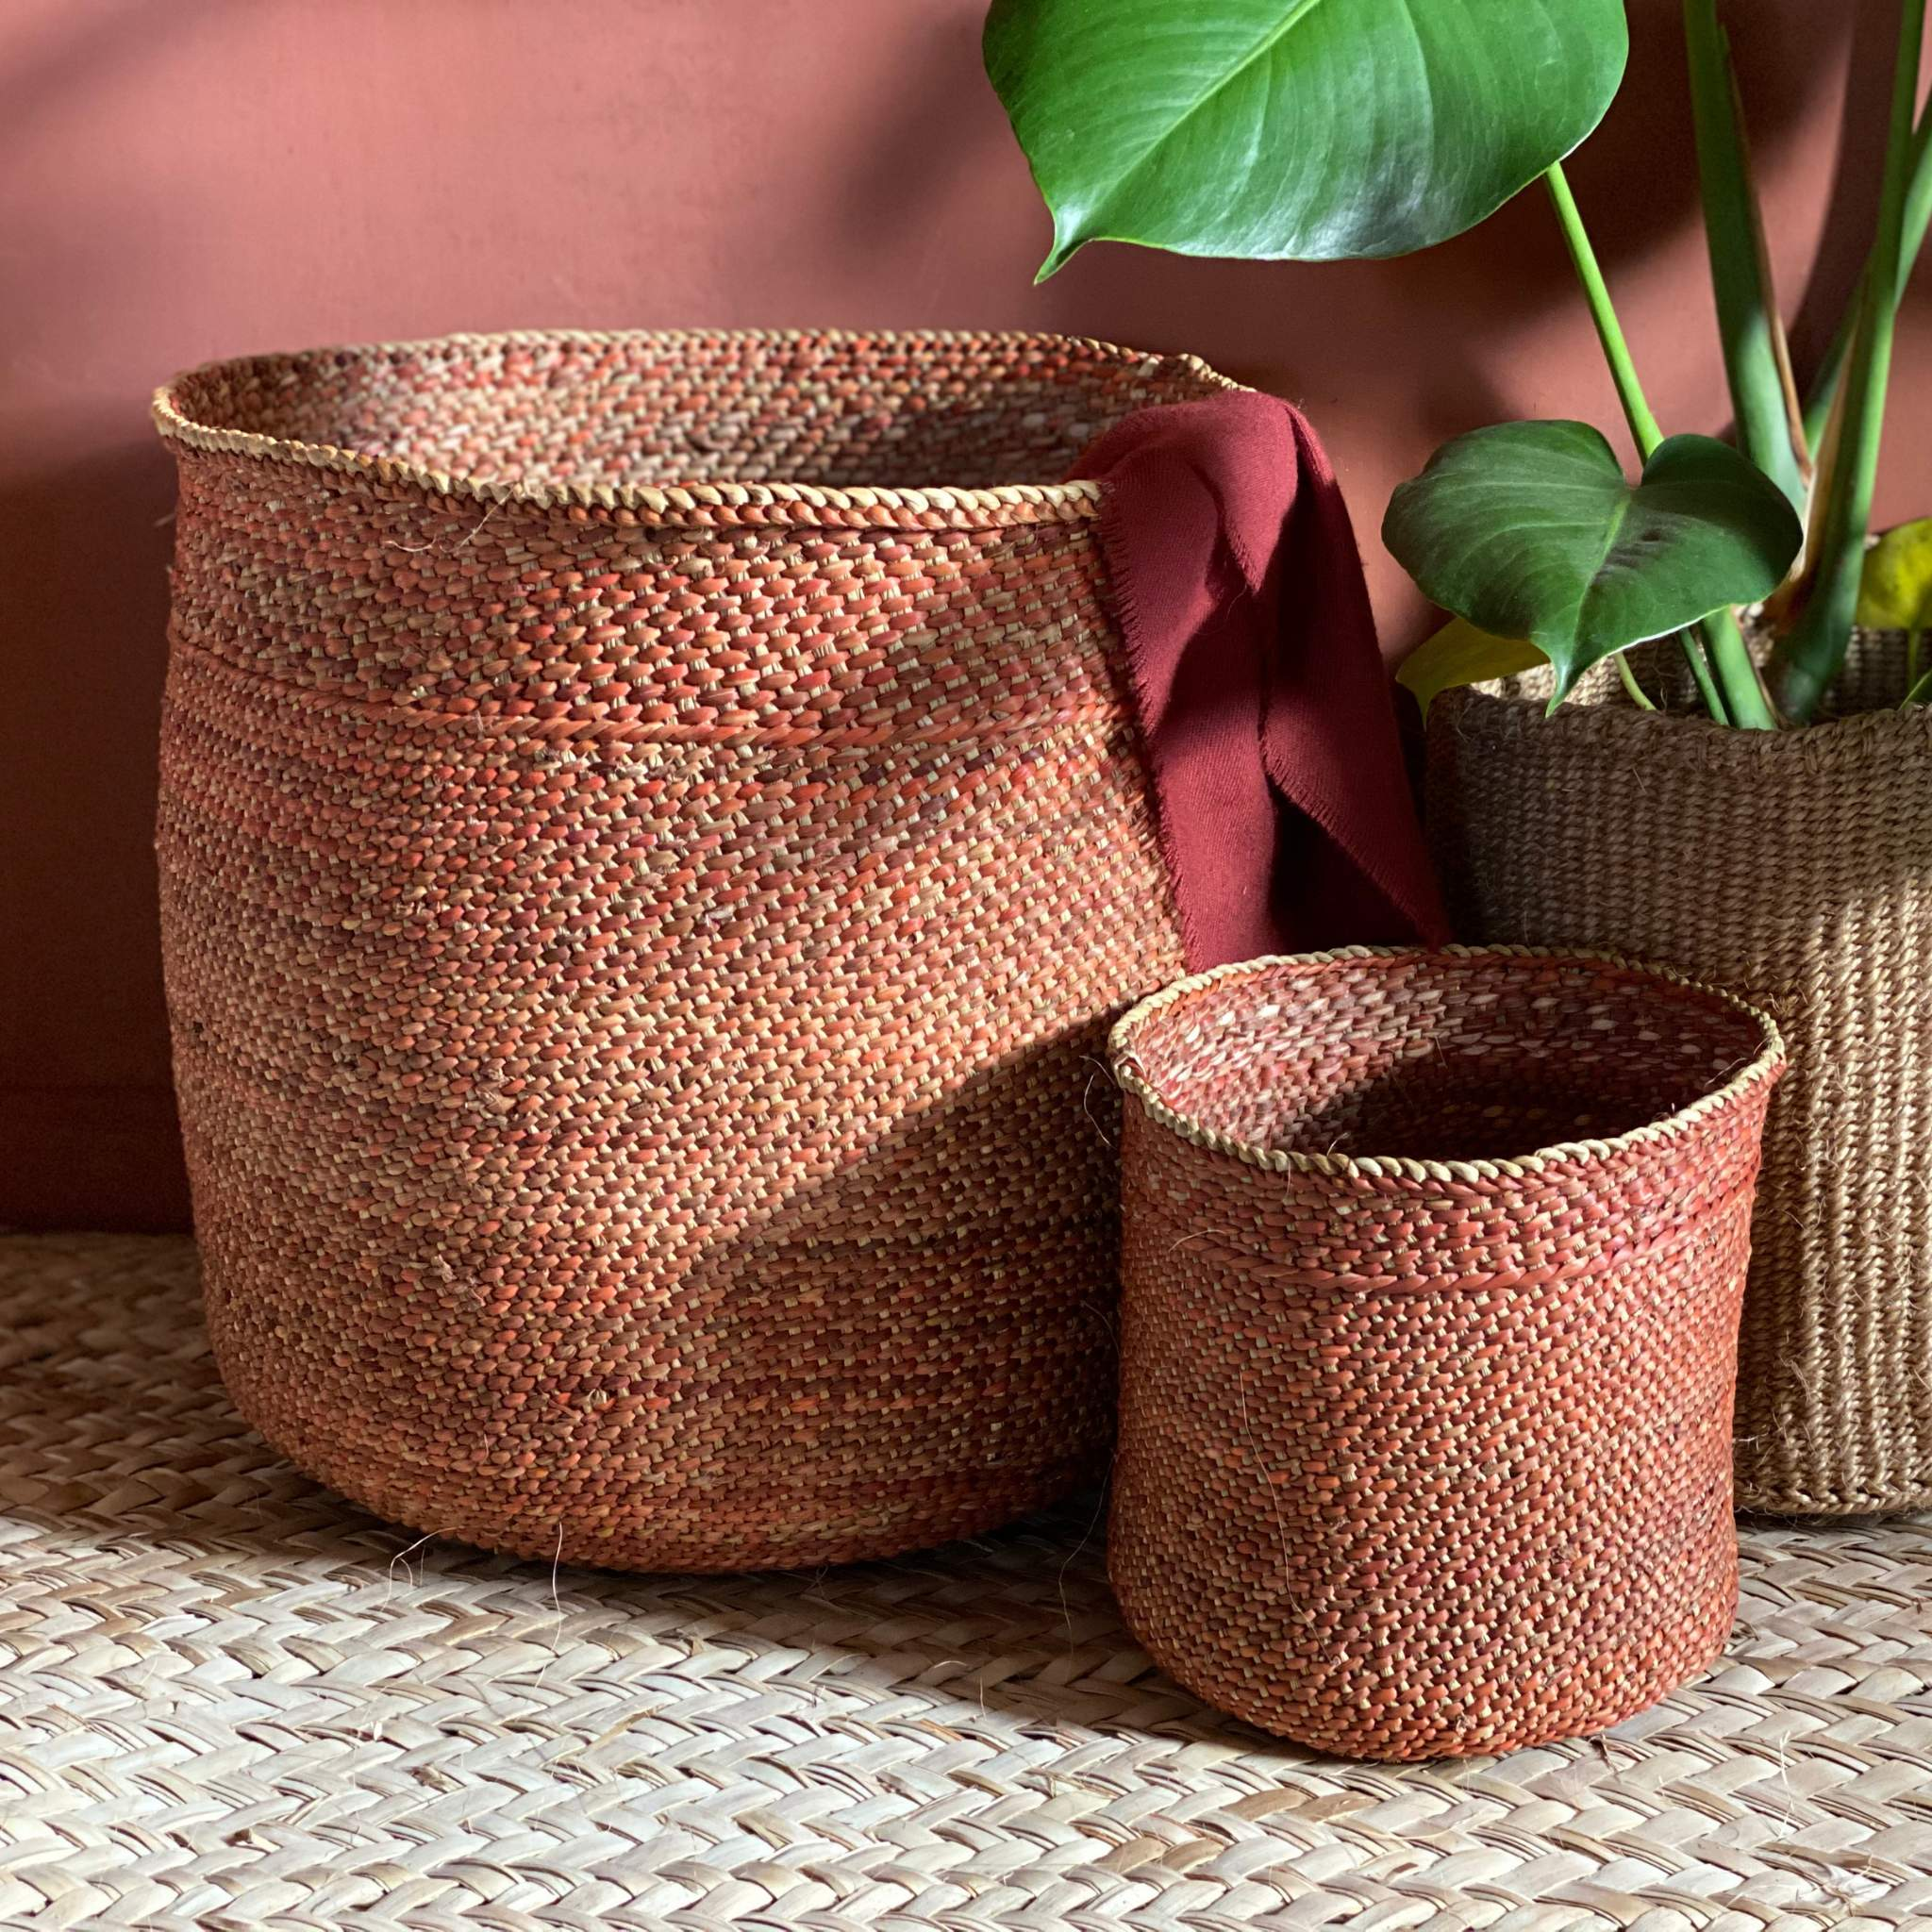 Iringa basket Terra-Artisan Traders-african,african basket,basket,fairtrade,handcrafted,iringa